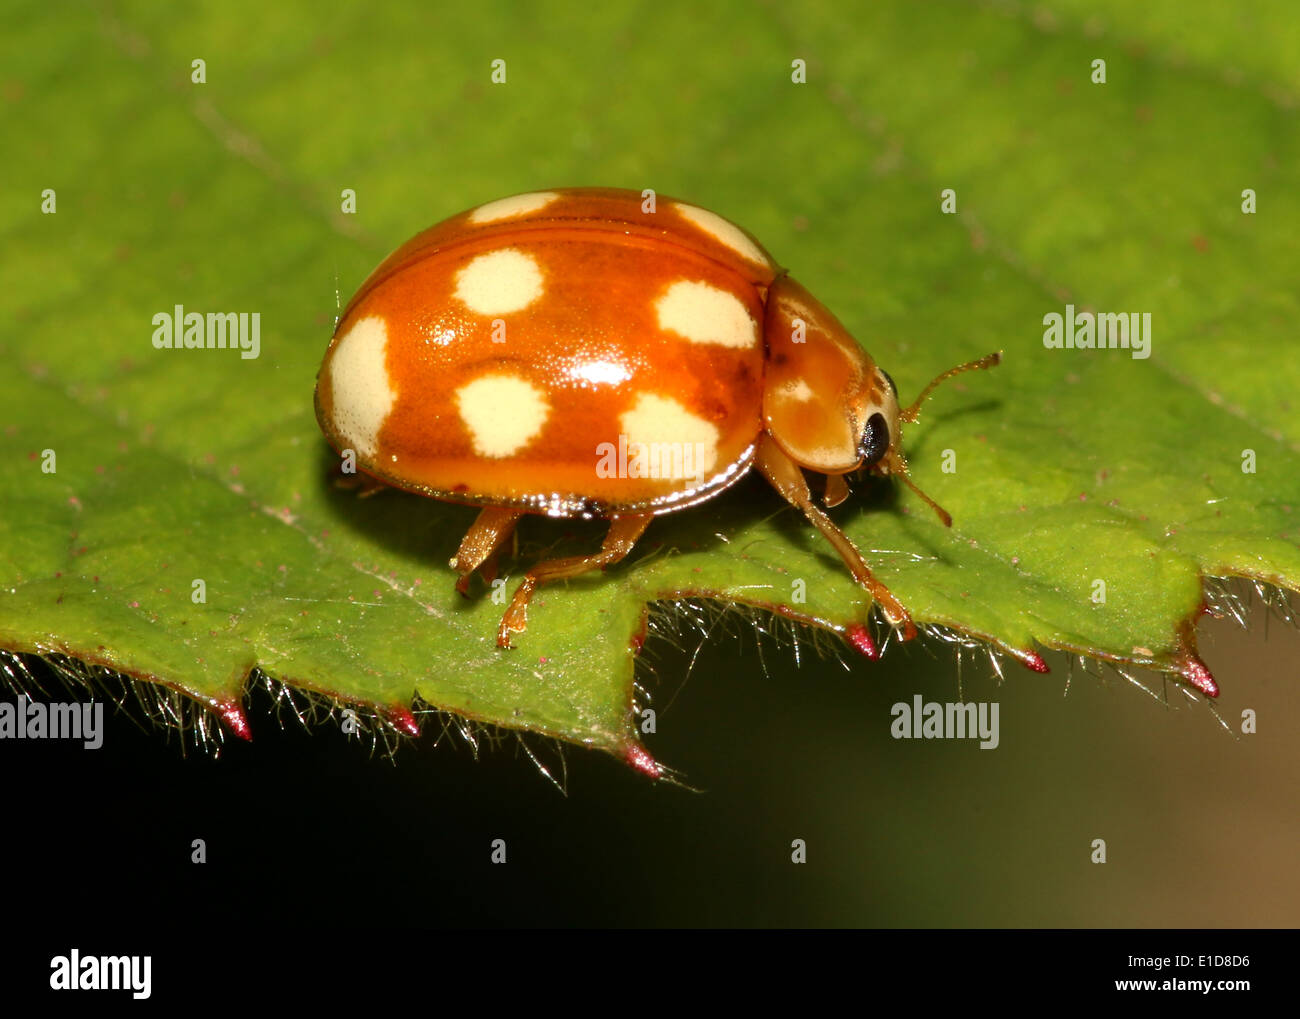 El minuto 10 puntos naranja mariquita / ladybug (Calvia decemguttata) Foto de stock